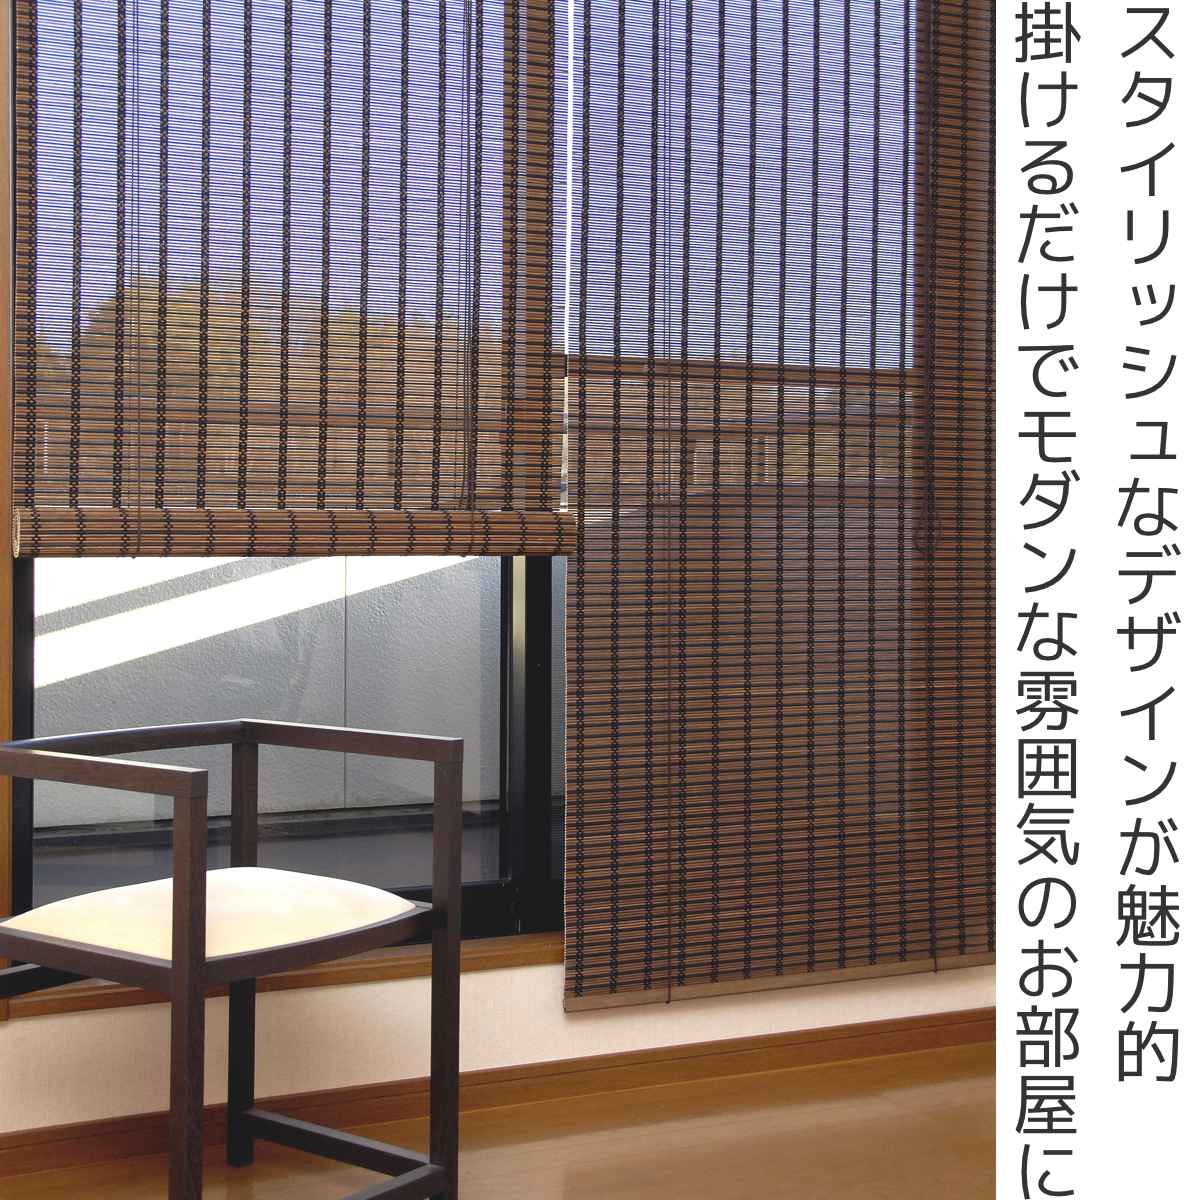 ロールスクリーン すだれ 竹製 スクエア 88×180cm （ 竹すだれ 簾 シェード サンシェード スクリーン カーテンレール 取付け バンブースクリーン ロールアップカーテン 間仕切り スダレ 遮光 日除け 通気性 簡単 取付 日本製 ）